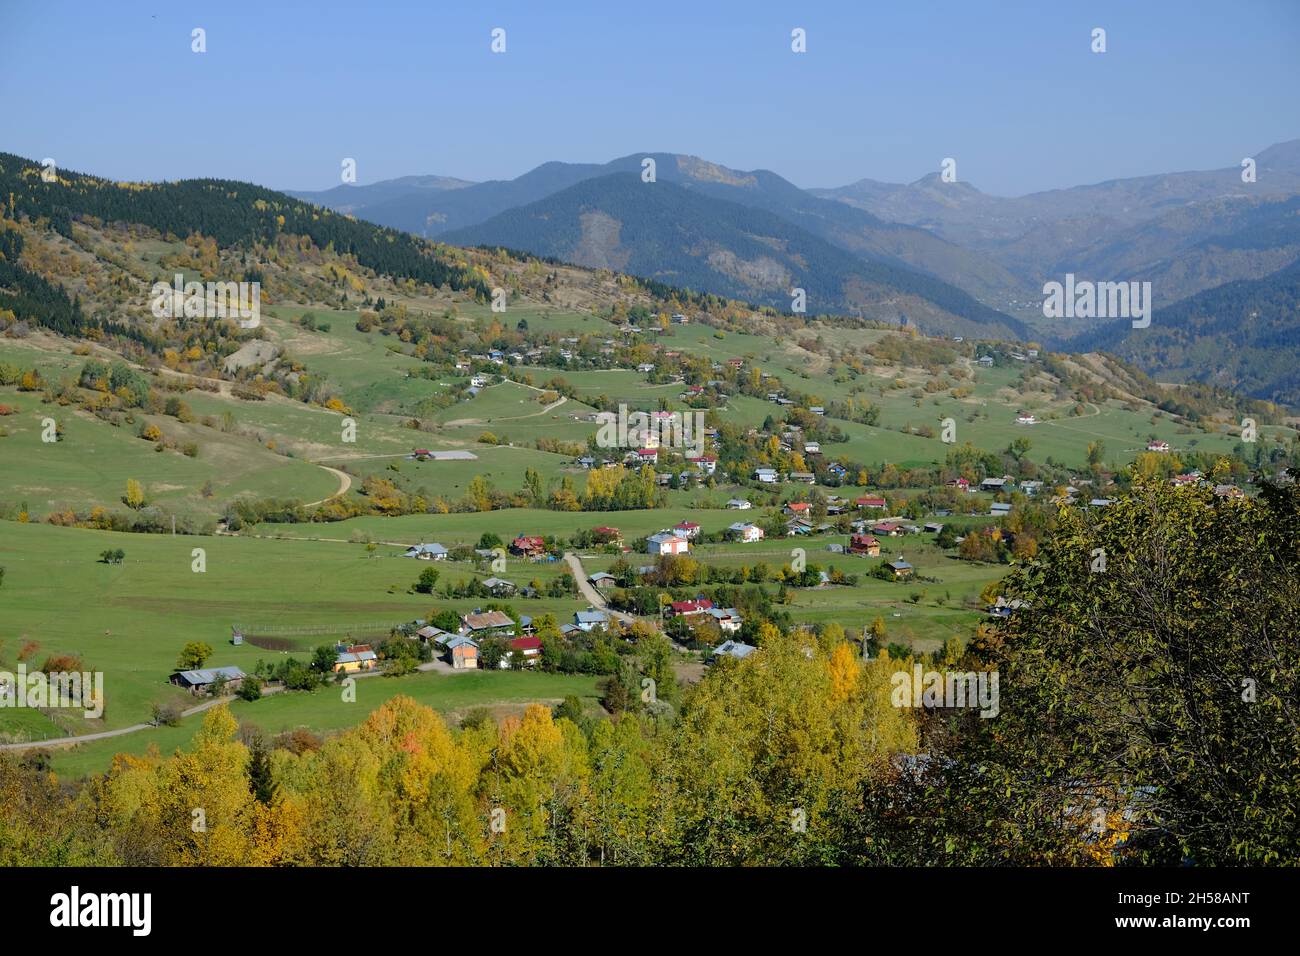 Las bellezas naturales de la provincia de Artvin ofrecen maravillosas vistas a sus visitantes en otoño. Foto de stock